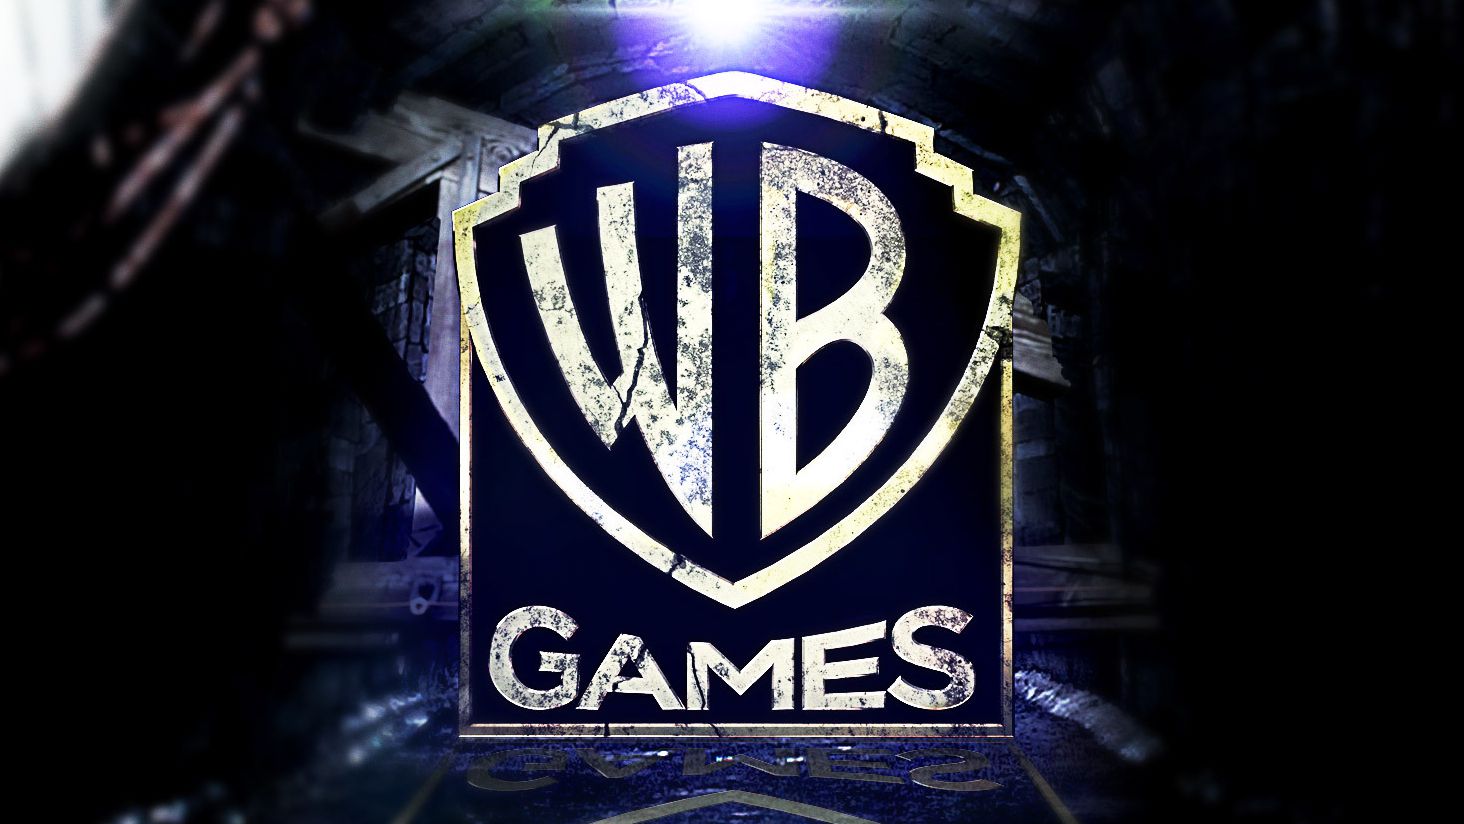 Analista prevê que a venda da Warner Bros Games irá desencadear uma onda de  Fusões e Mega-Aquisições